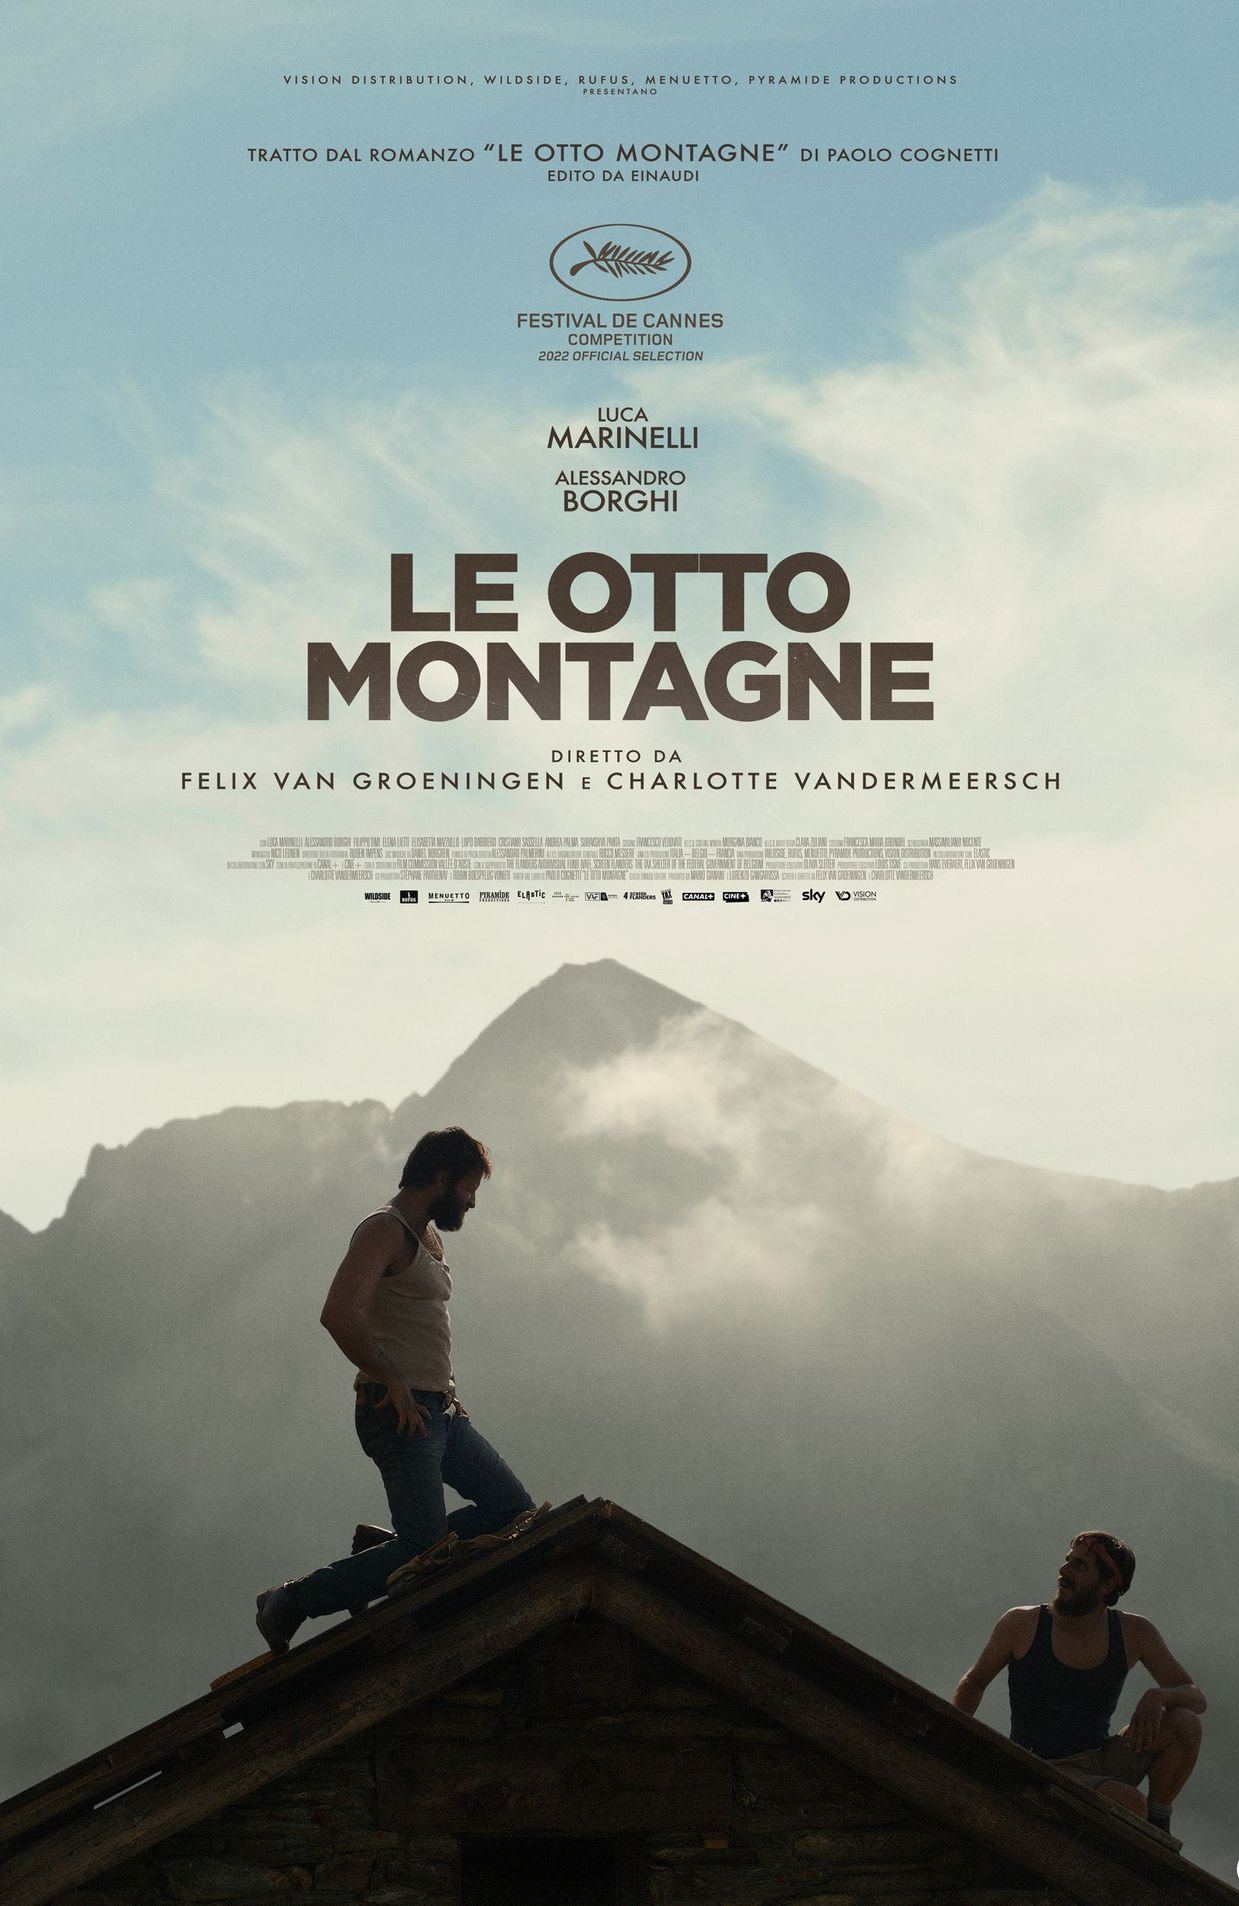 L'affiche de "Le Otto Montagne"